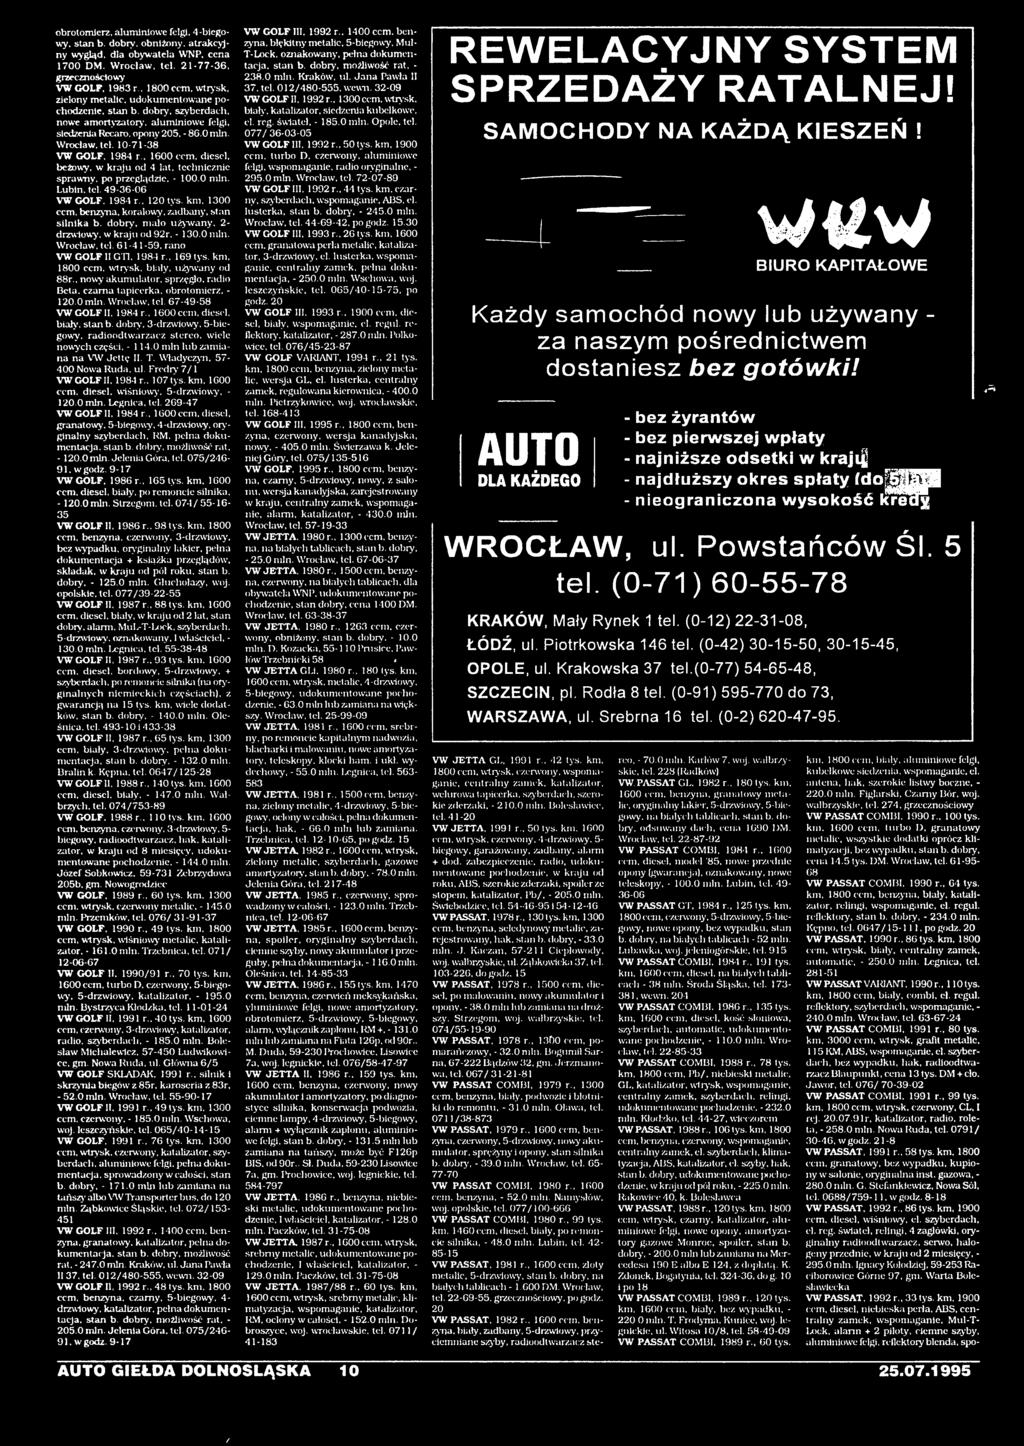 1600 ccm, diesel, na białych tablicach - 38 min. Środa Śląska, tel. 173-381. wewn. 4 VW PASSAT COMBI. 1986 r., 135 tys.